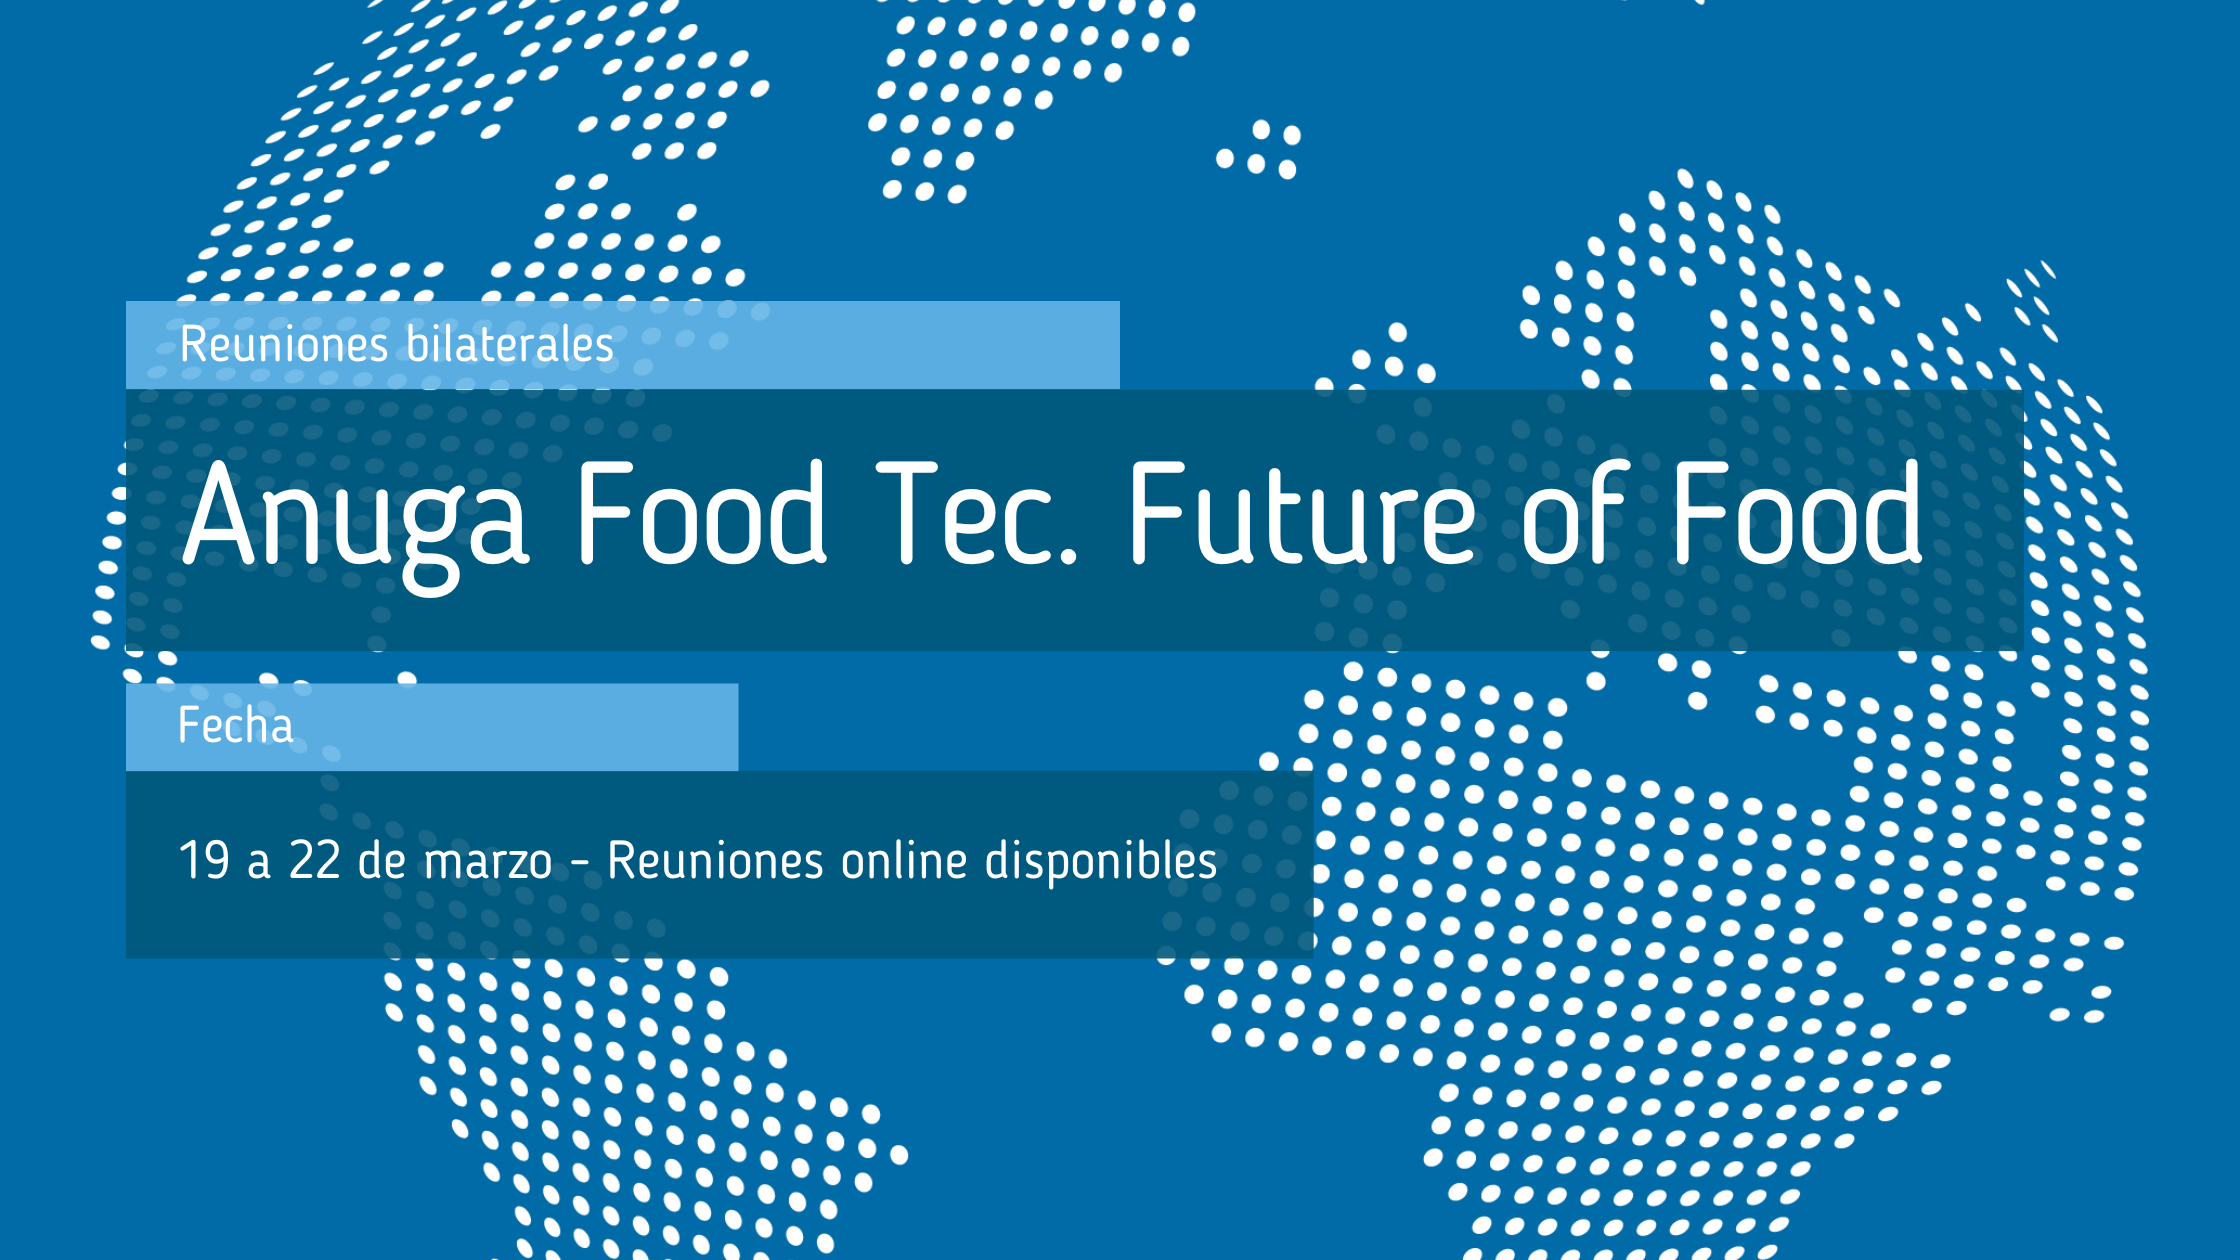 Anuga_Food_Tec_Future_of_Food